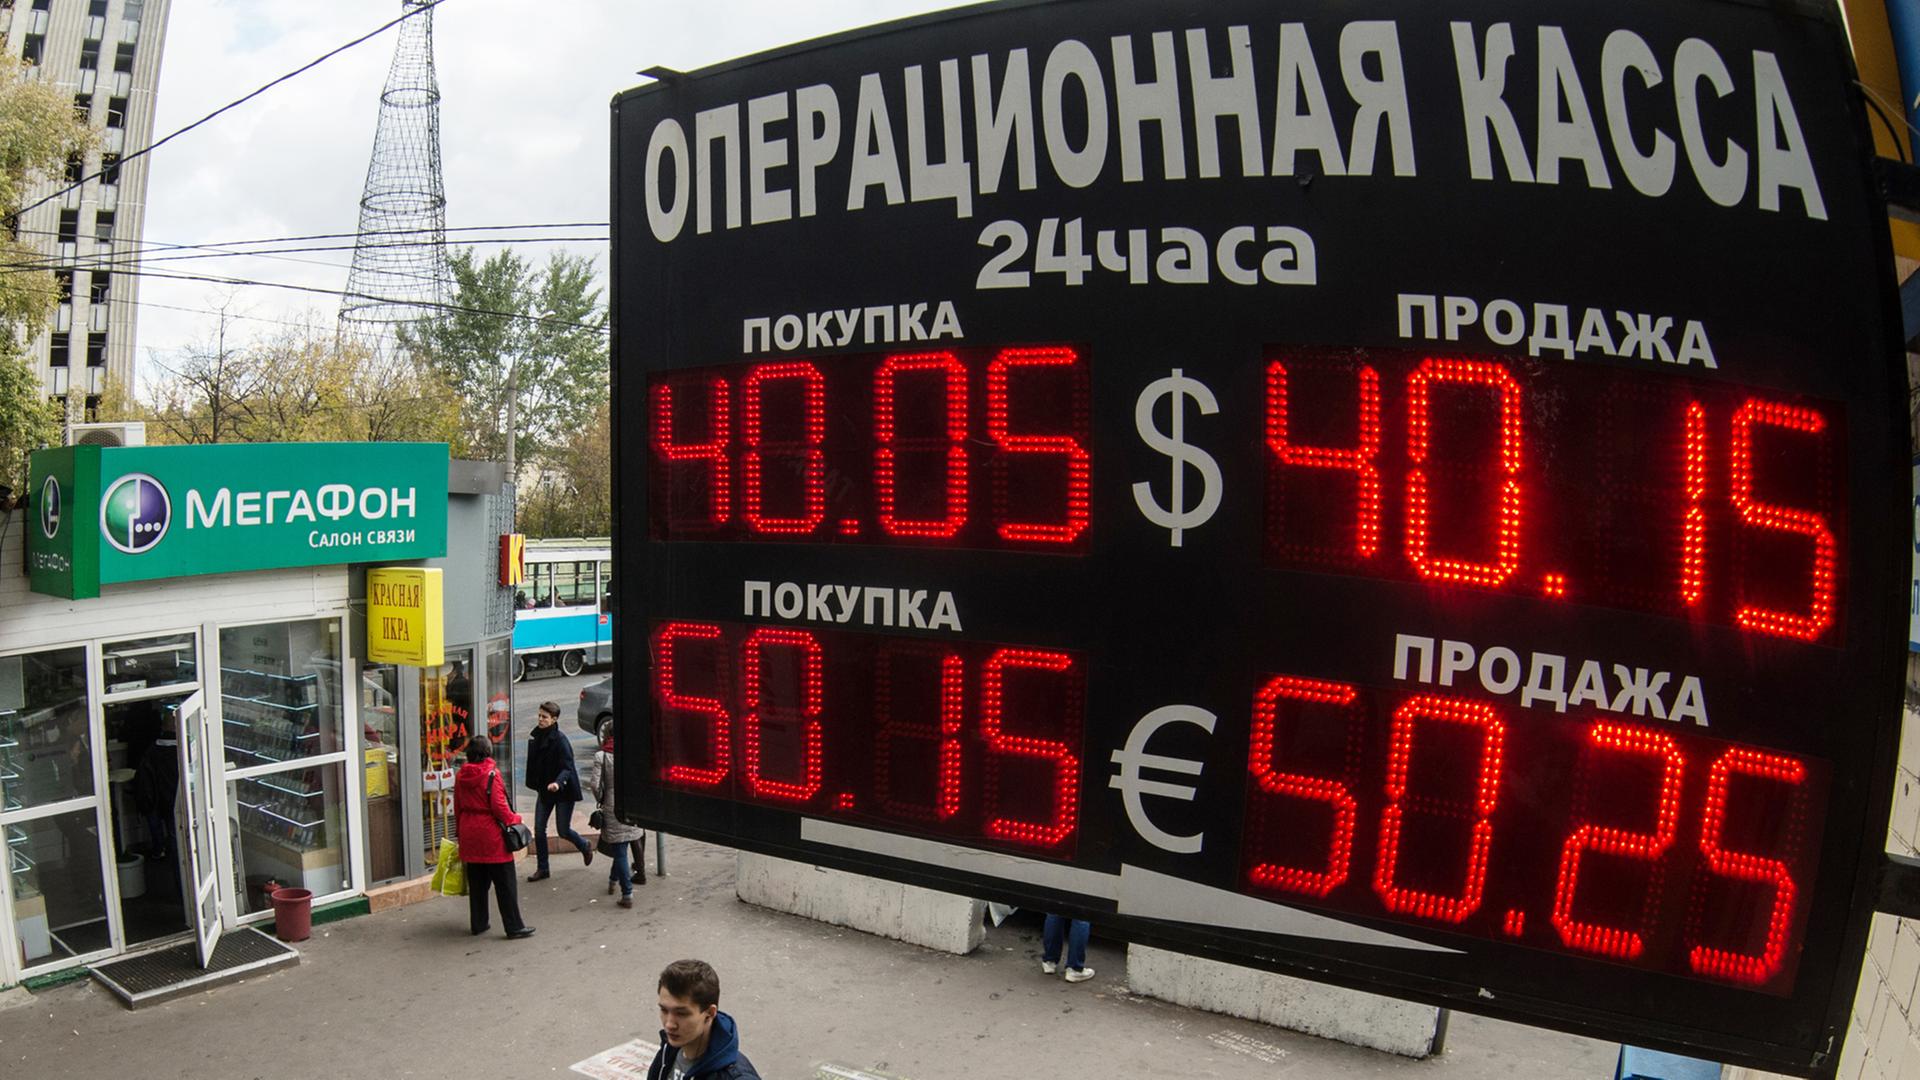 Eine Anzeigetafel in Moskau zeigt den aktuellen Wechselkurs des russischen Rubels. Zum ersten Mal muss man für einen Dollar mehr als 40 Rubel bezahlen.